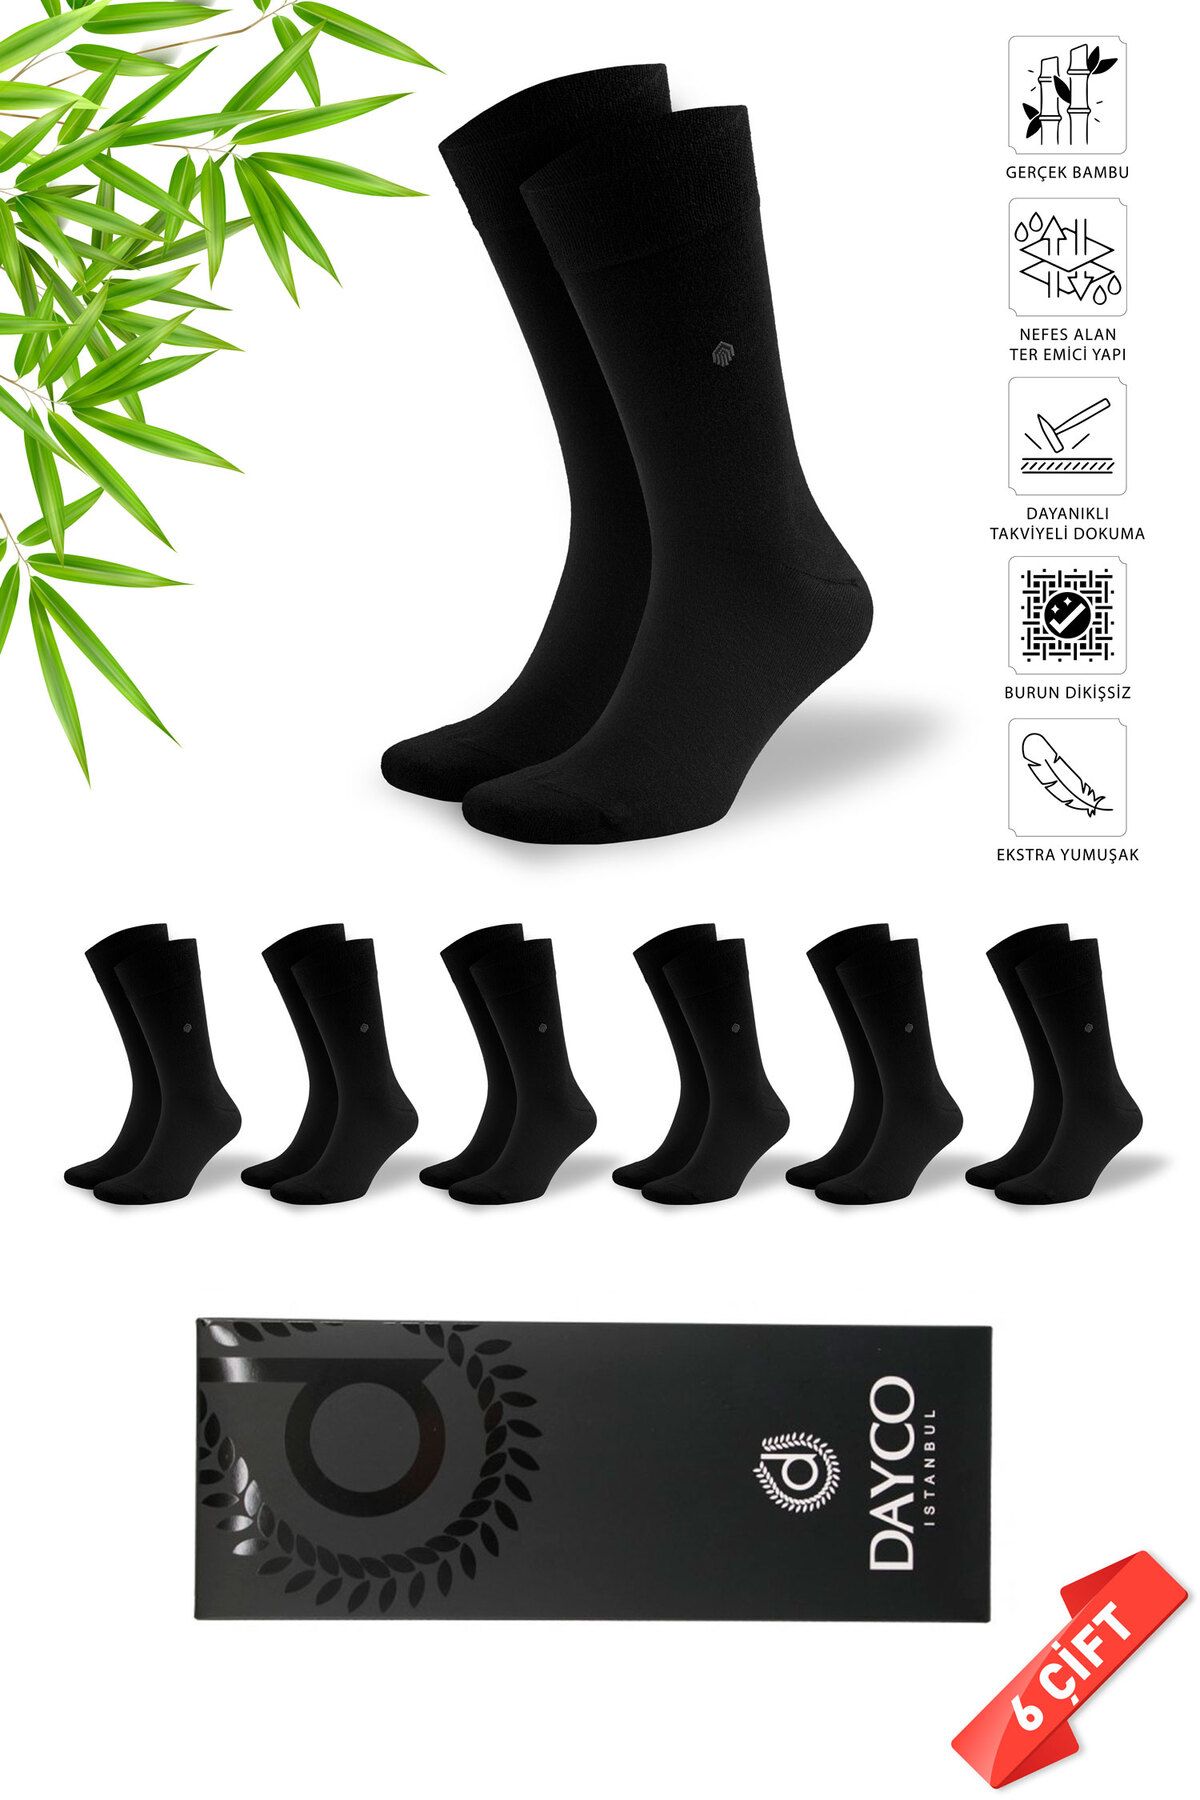 DAYCO Premium Dikişsiz Klasik Uzun Siyah Yazlık Erkek Bambu Soket Çorap 6lı Hediyelik Kutulu Set